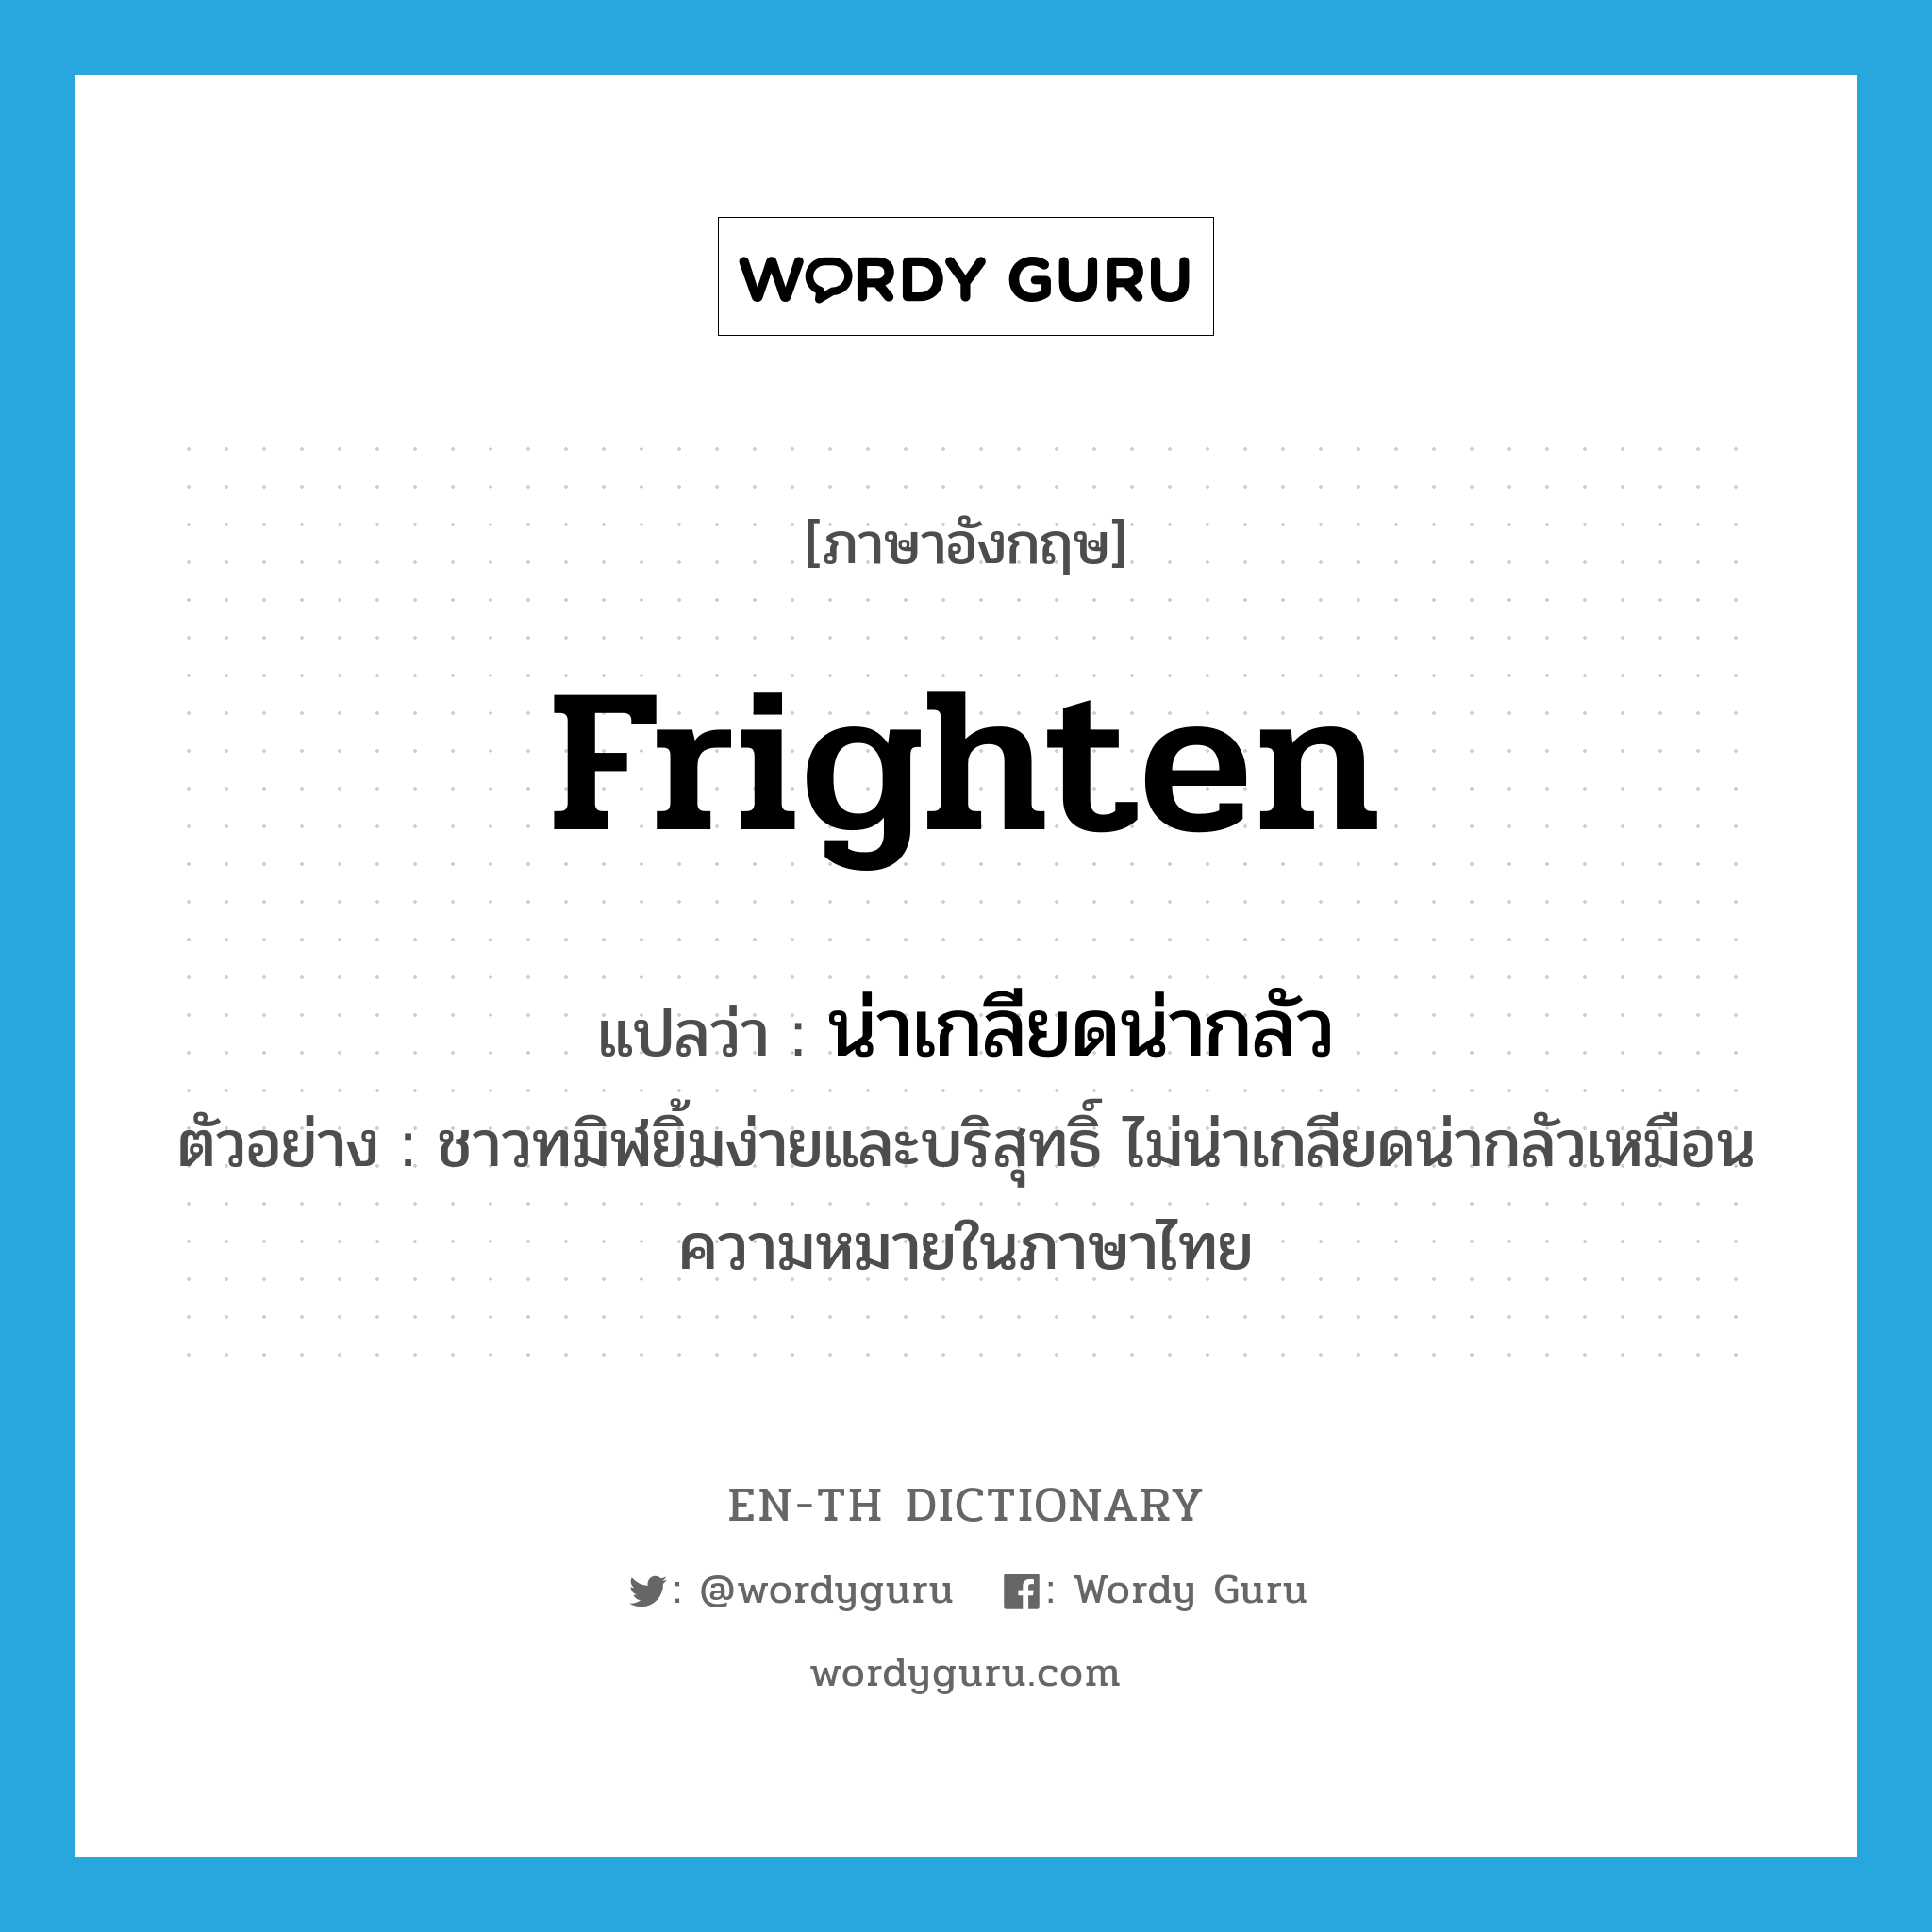 น่าเกลียดน่ากลัว ภาษาอังกฤษ?, คำศัพท์ภาษาอังกฤษ น่าเกลียดน่ากลัว แปลว่า frighten ประเภท V ตัวอย่าง ชาวทมิฬยิ้มง่ายและบริสุทธิ์ ไม่น่าเกลียดน่ากลัวเหมือนความหมายในภาษาไทย หมวด V